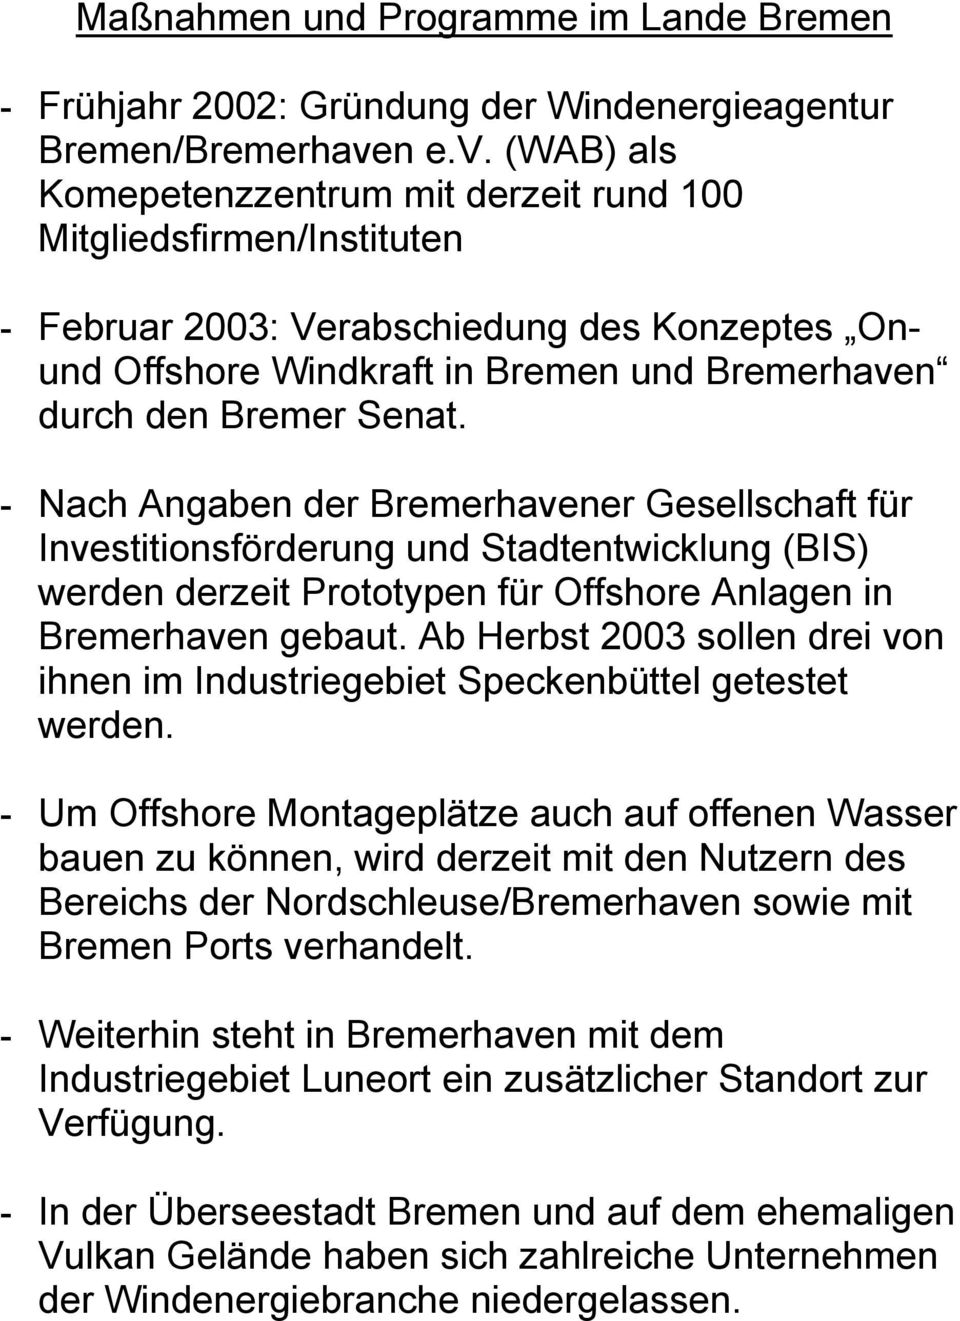 (WAB) als Komepetenzzentrum mit derzeit rund 100 Mitgliedsfirmen/Instituten - Februar 2003: Verabschiedung des Konzeptes Onund Offshore Windkraft in Bremen und Bremerhaven durch den Bremer Senat.